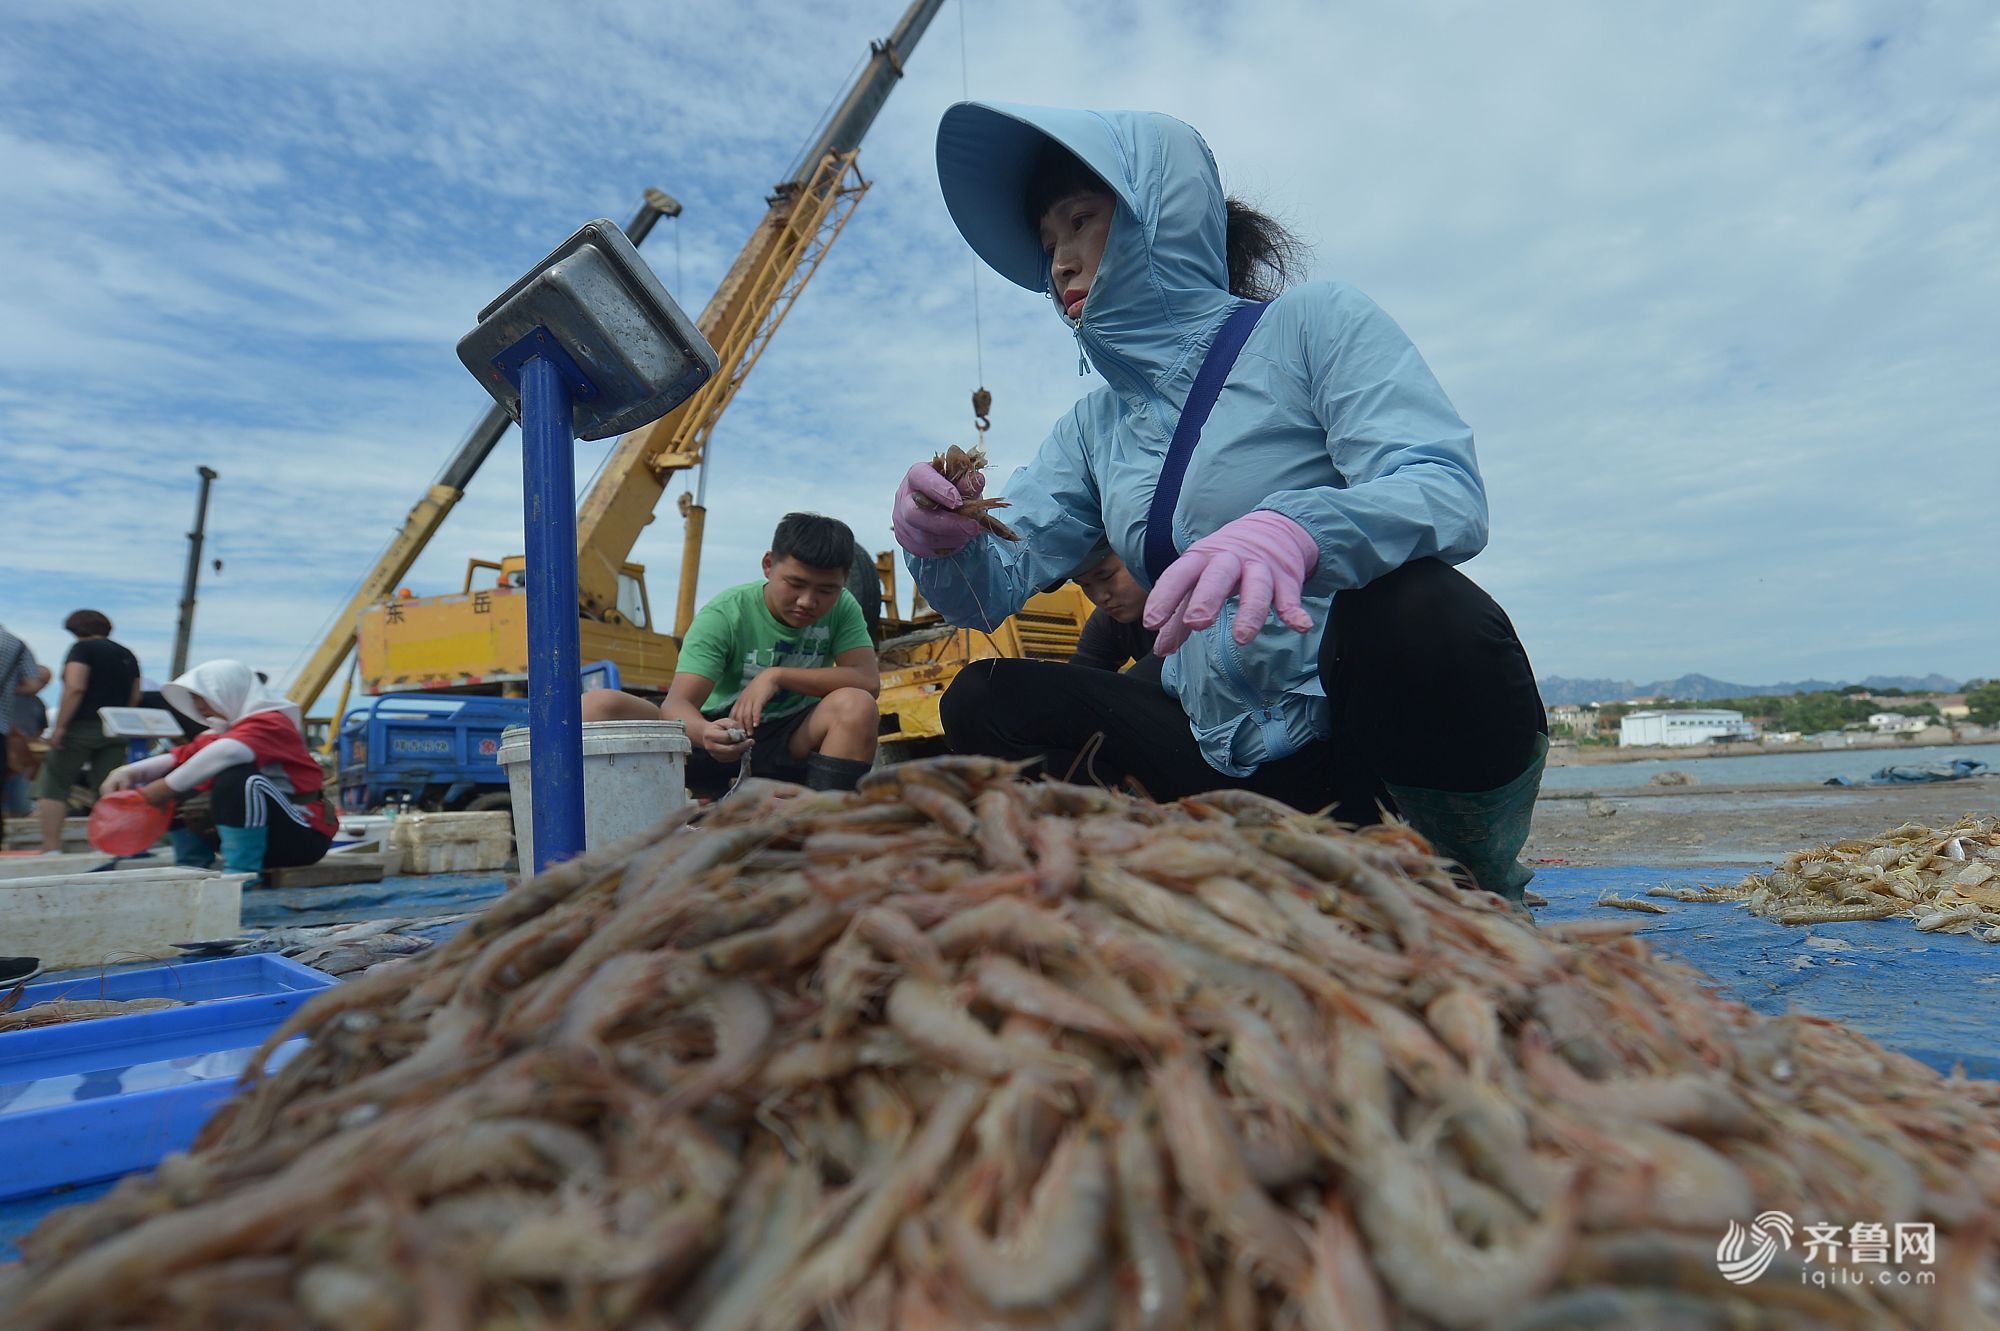 晒·秋 | 秋捕正当时 青岛海鲜市场热销鱼虾贝类海产